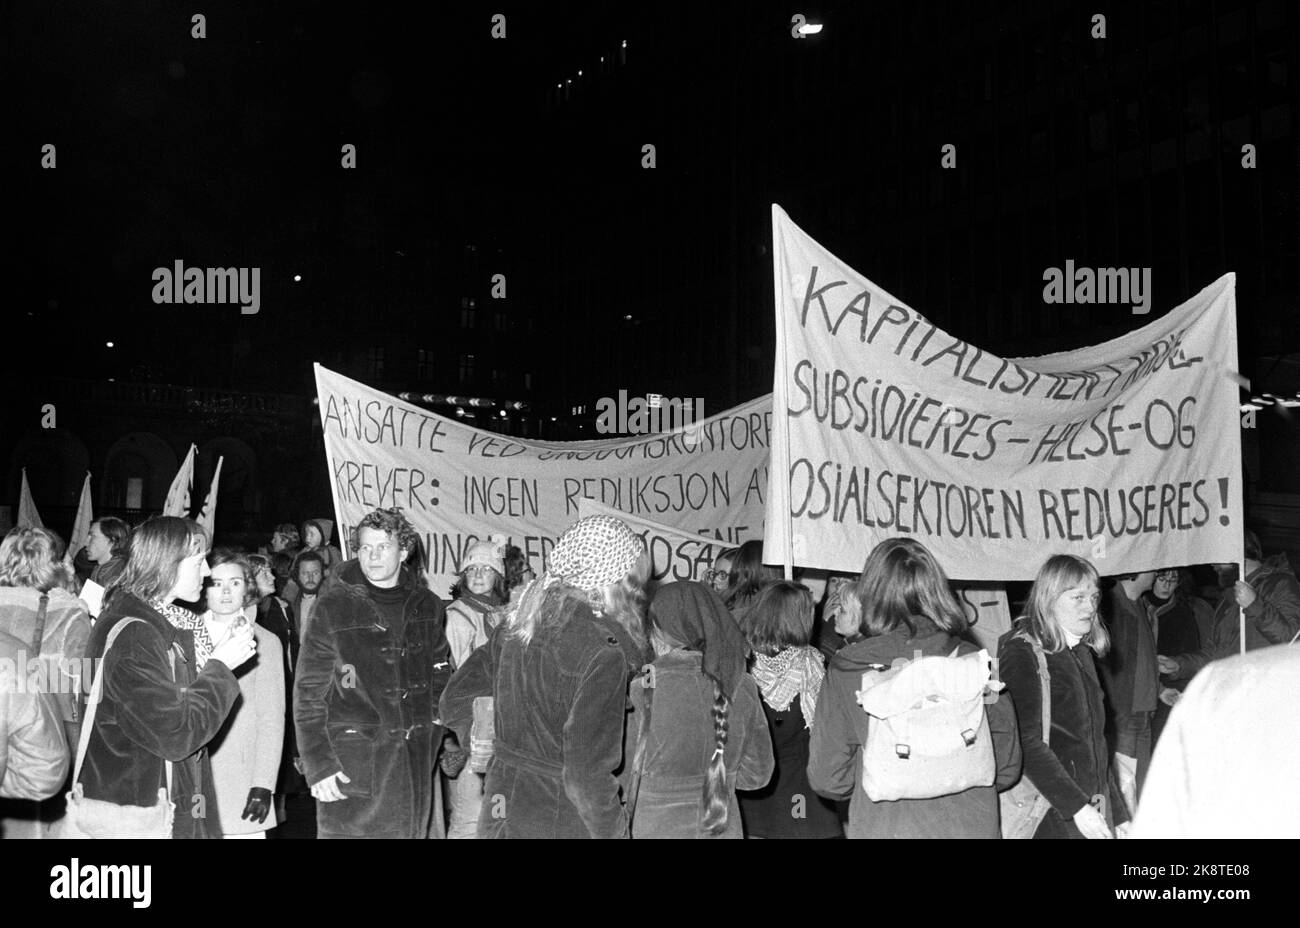 Oslo 19751106. Manifestación contra el presupuesto estatal, el «presupuesto de crisis» en el sector sanitario y social en Oslo. Lemas: «Los capitalistas están subsidiados, el sector sanitario y social está reducido». Foto Arild Hordnes / NTB / NTB Foto de stock